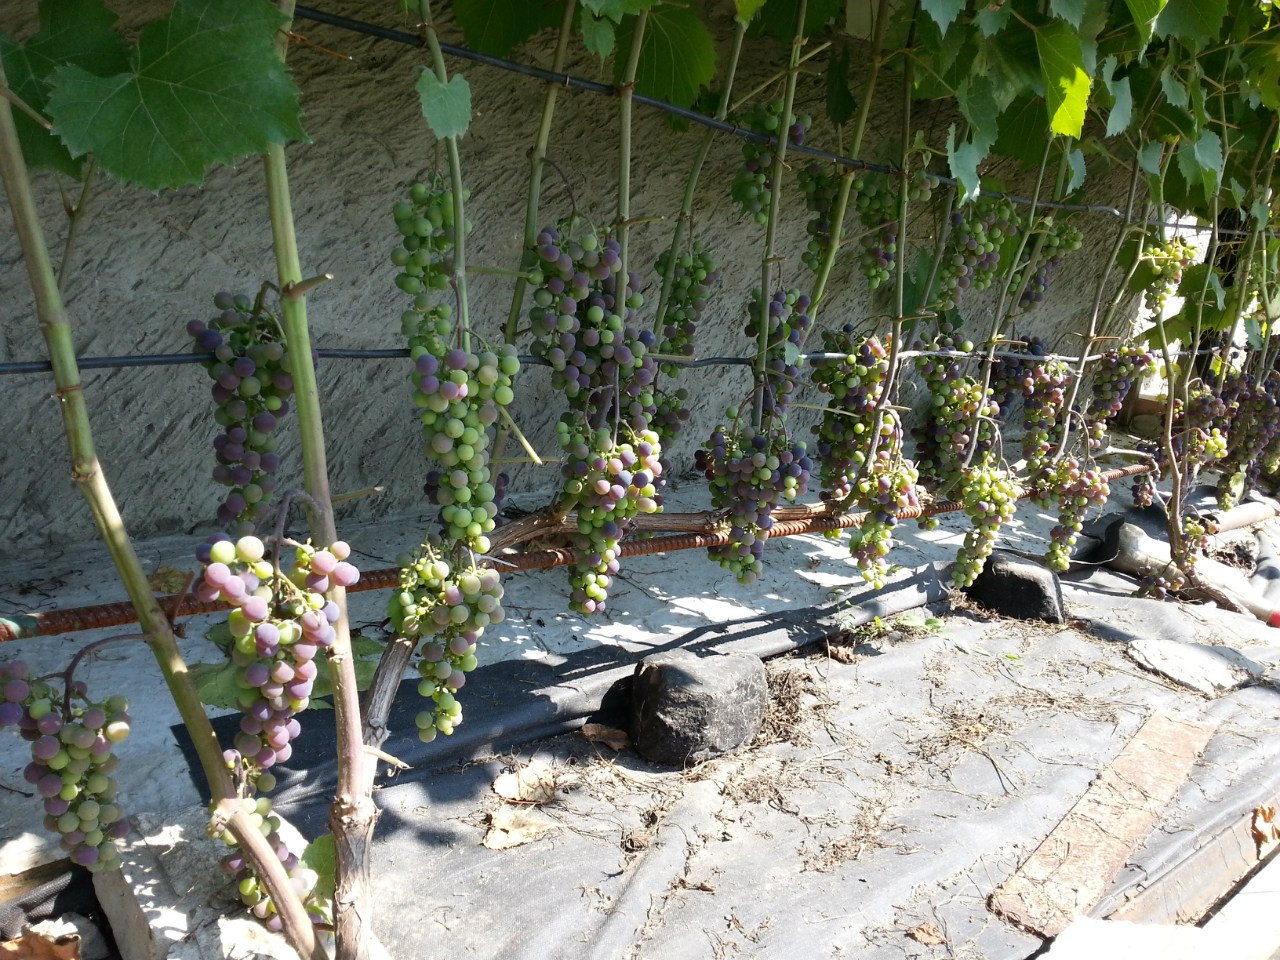 Вырастить виноград из семян? почему бы и нет!